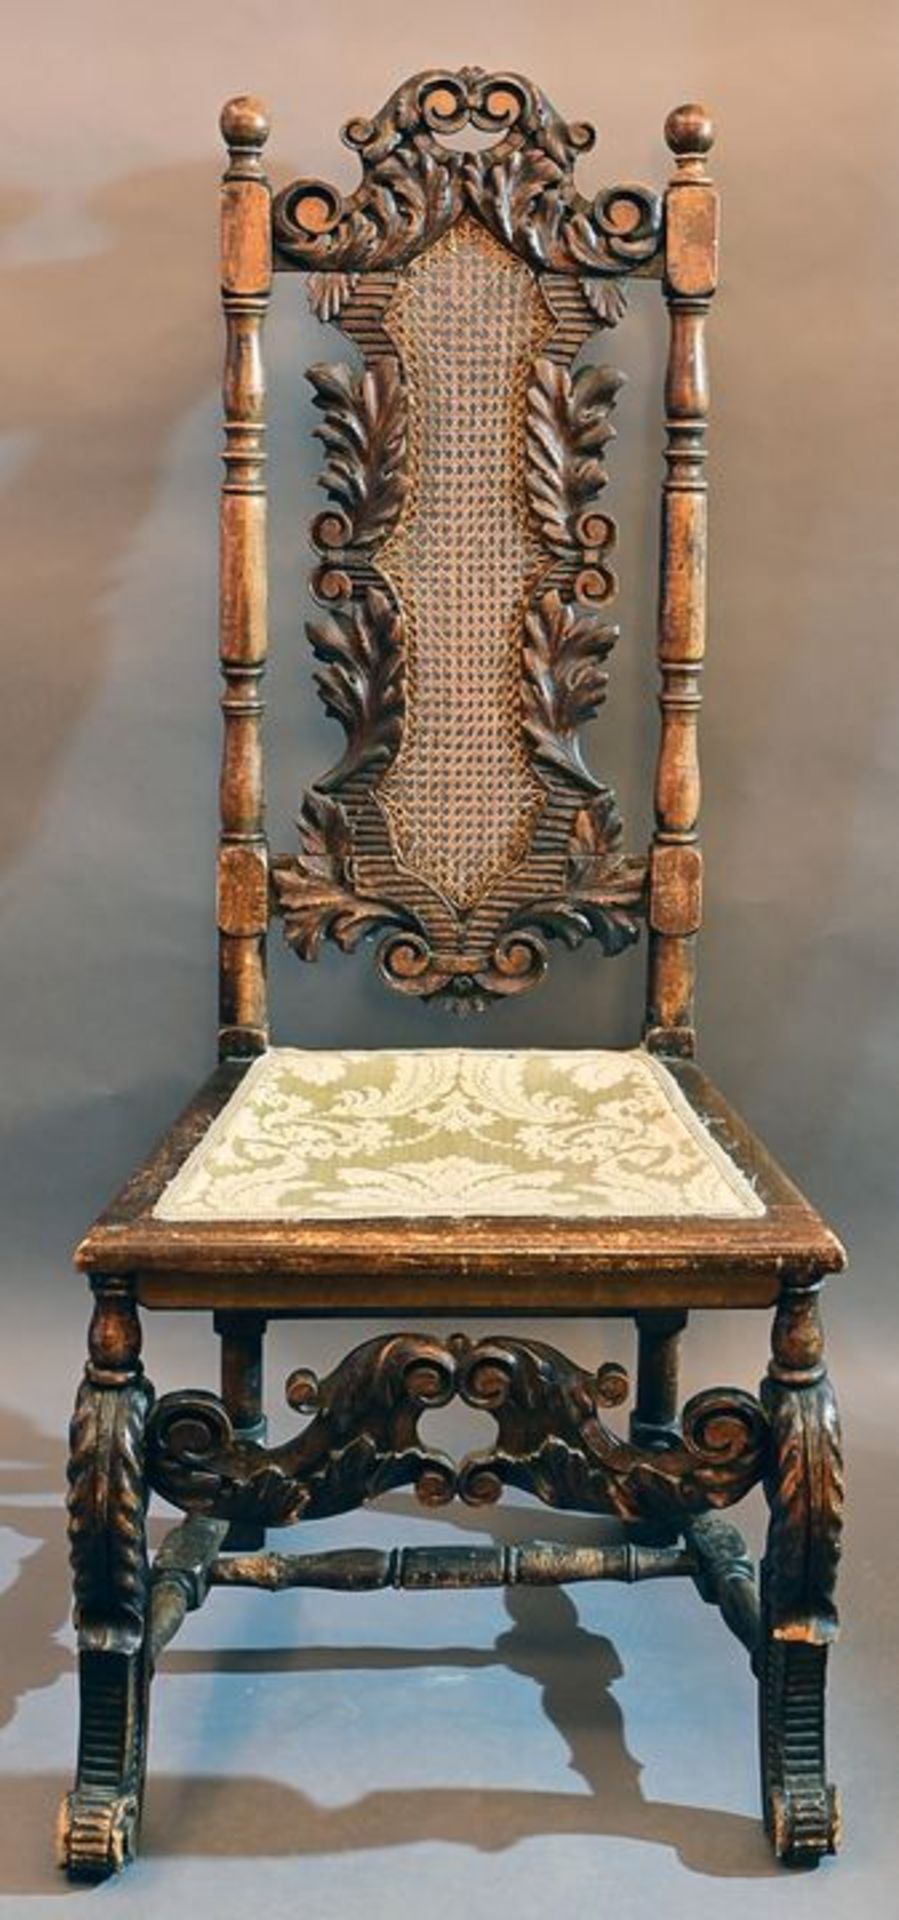 Großer Stuhl, Barockstil / Large chair